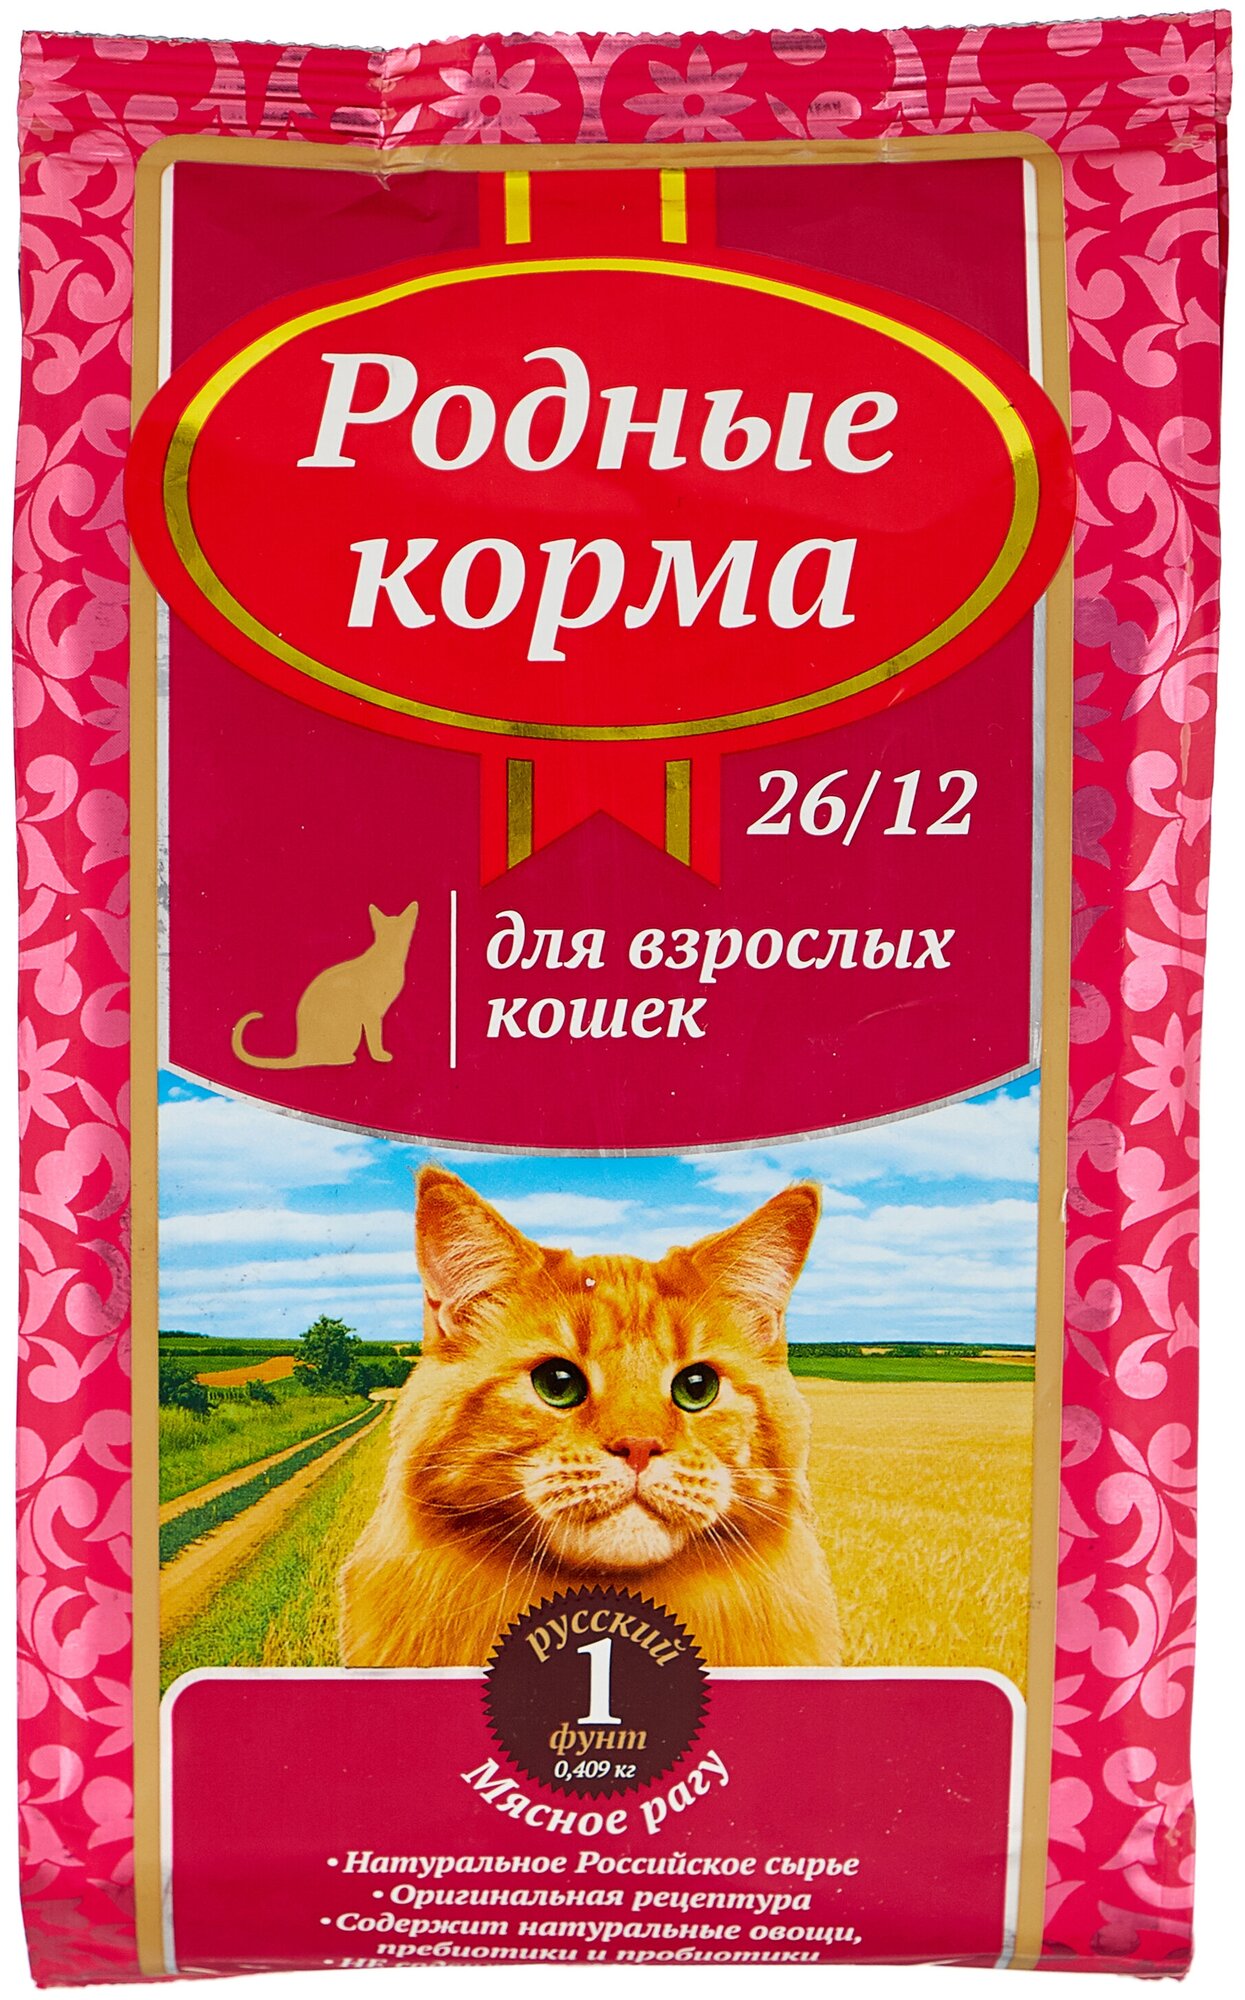 Родные корма сухой корм для взрослых кошек мясное рагу 26/12 1 русский фунт (0,409 кг)